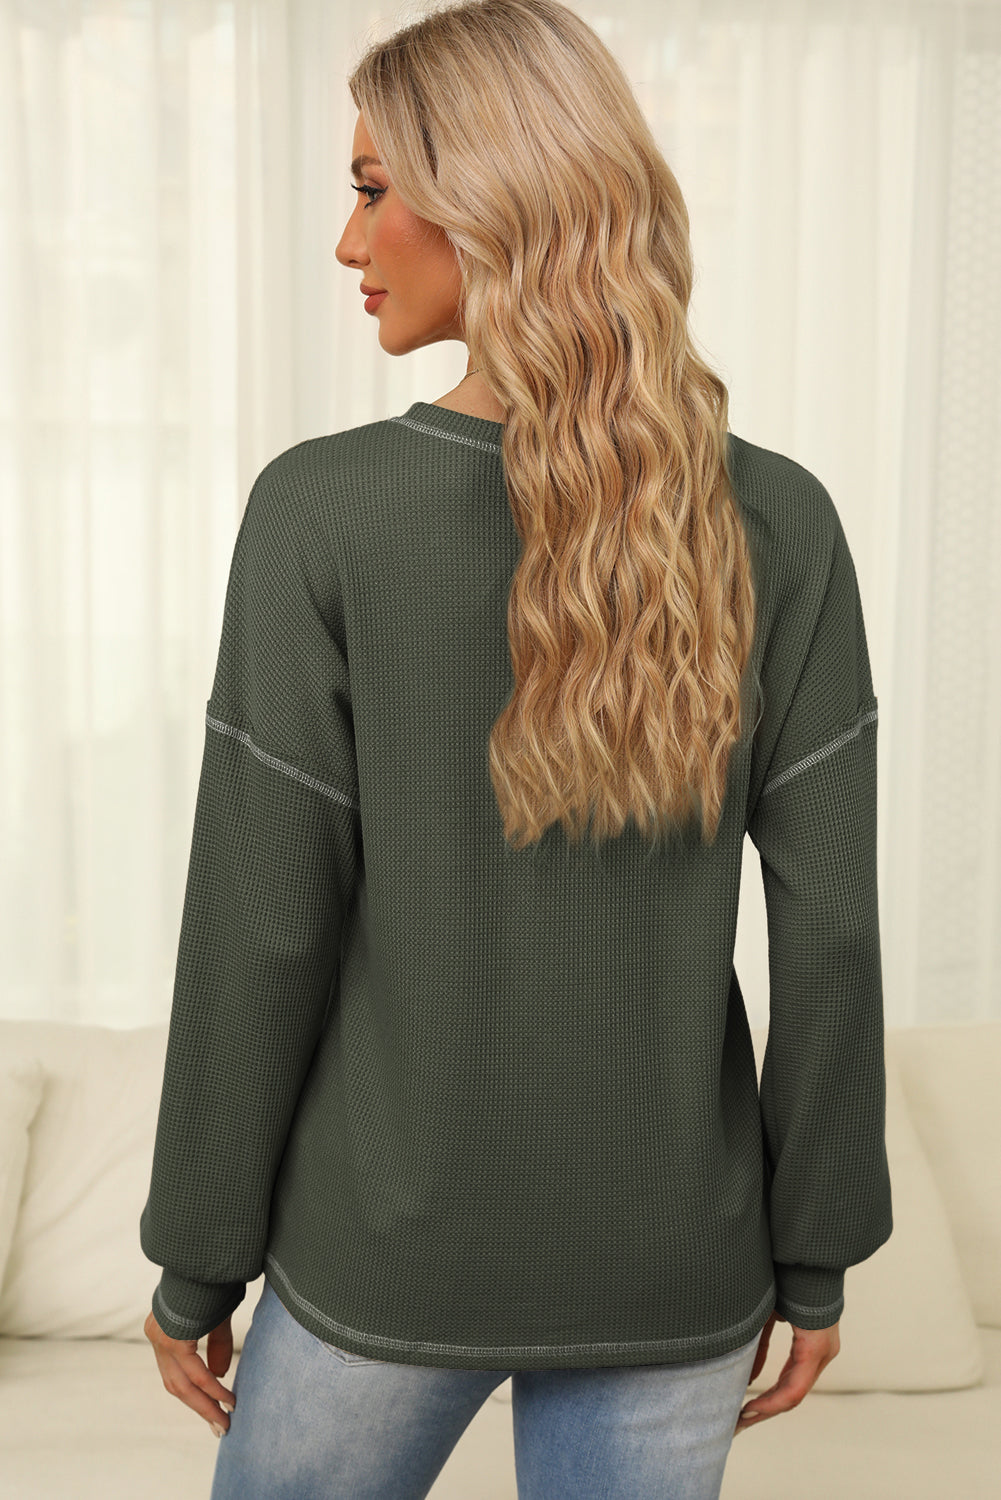 Vafelj pletena majica z izpostavljenimi šivi v megleno zelenem kontrastu